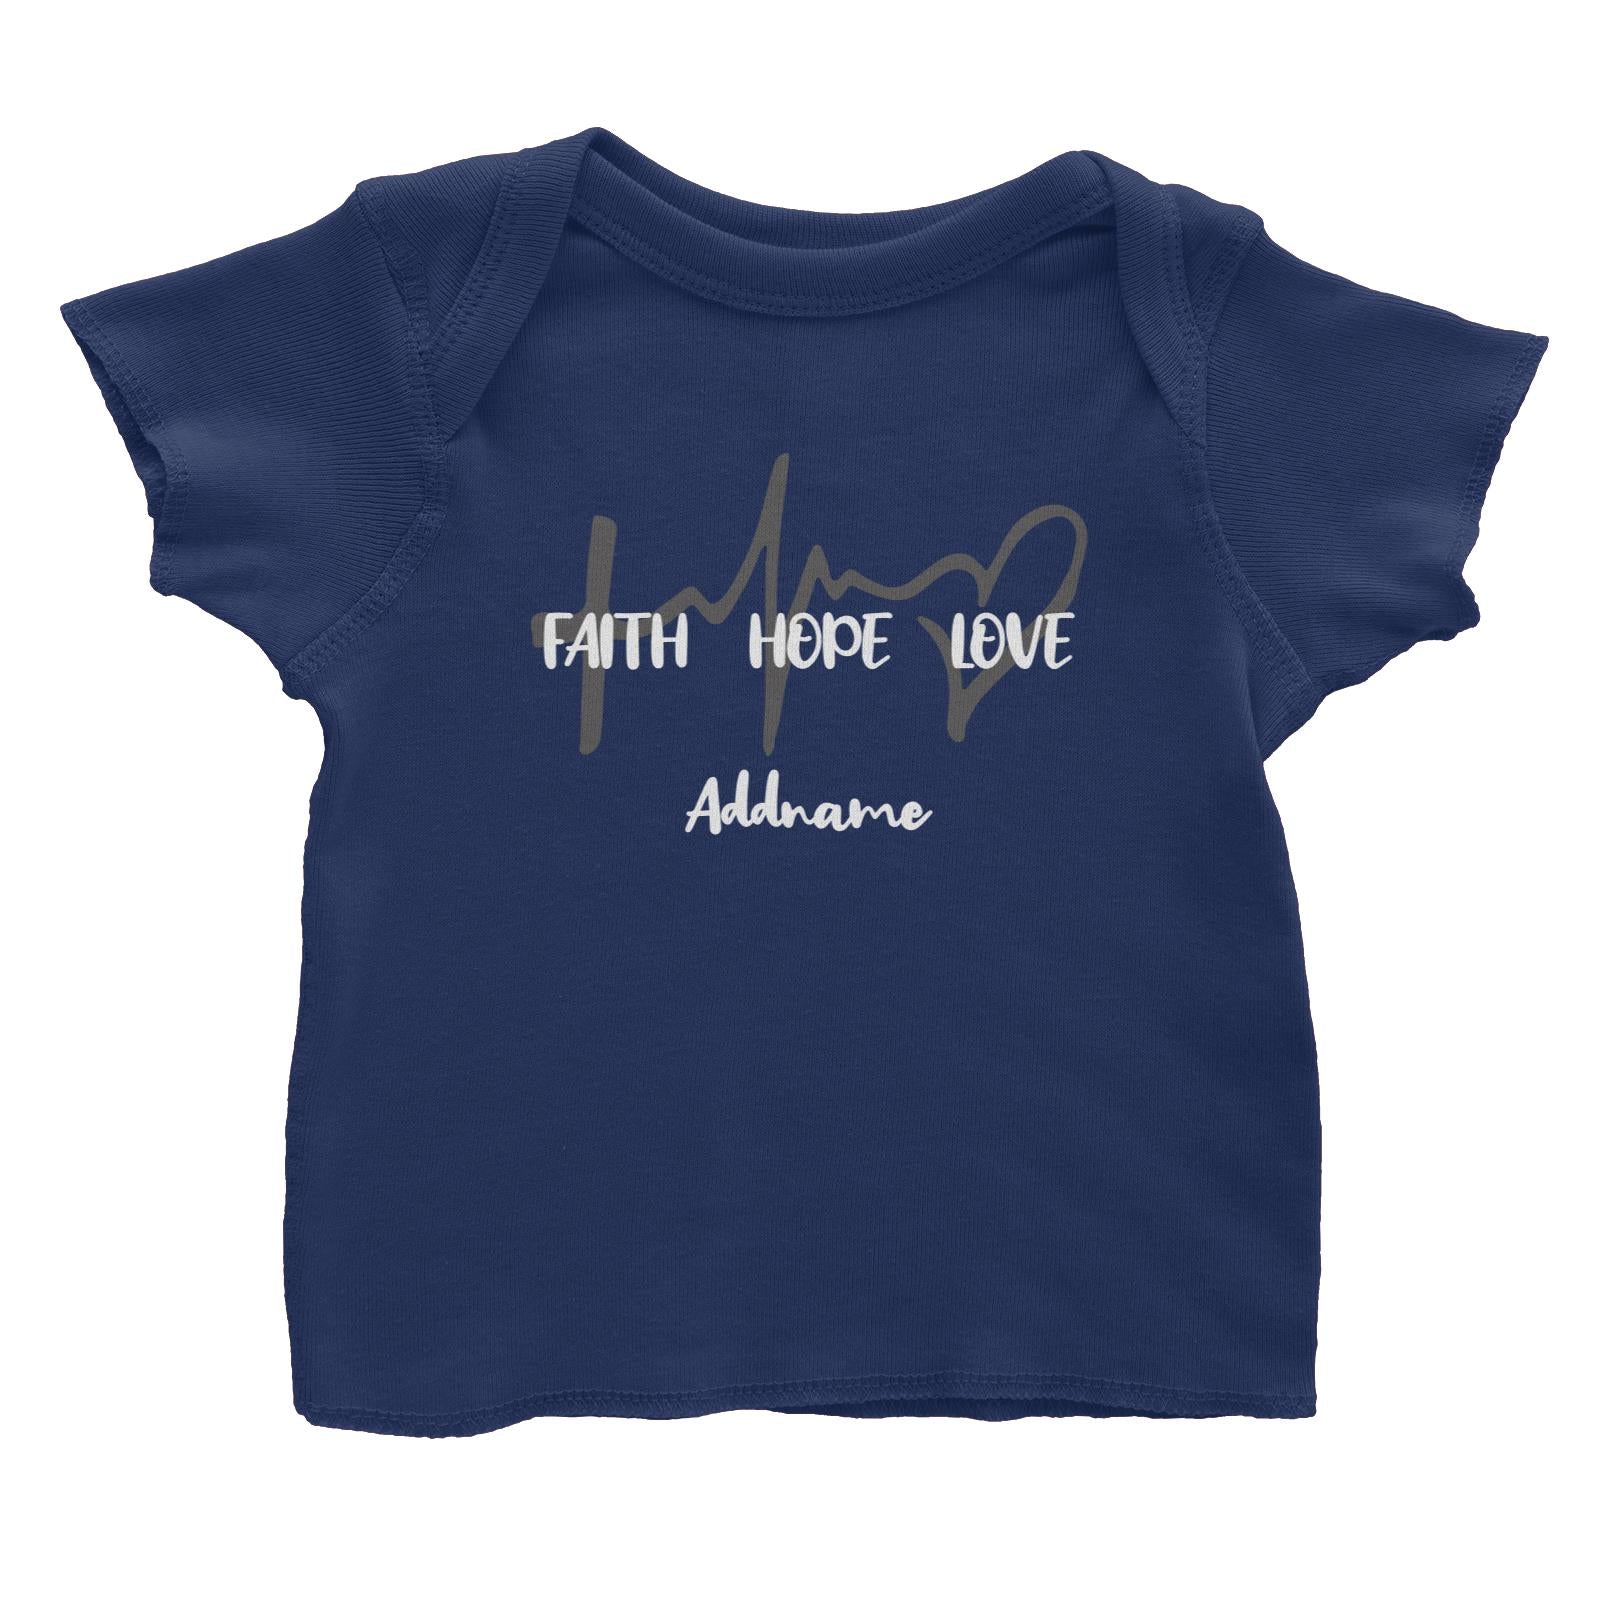 Christian Series Faith Hope Family Faith Hope Love Addname Baby T-Shirt